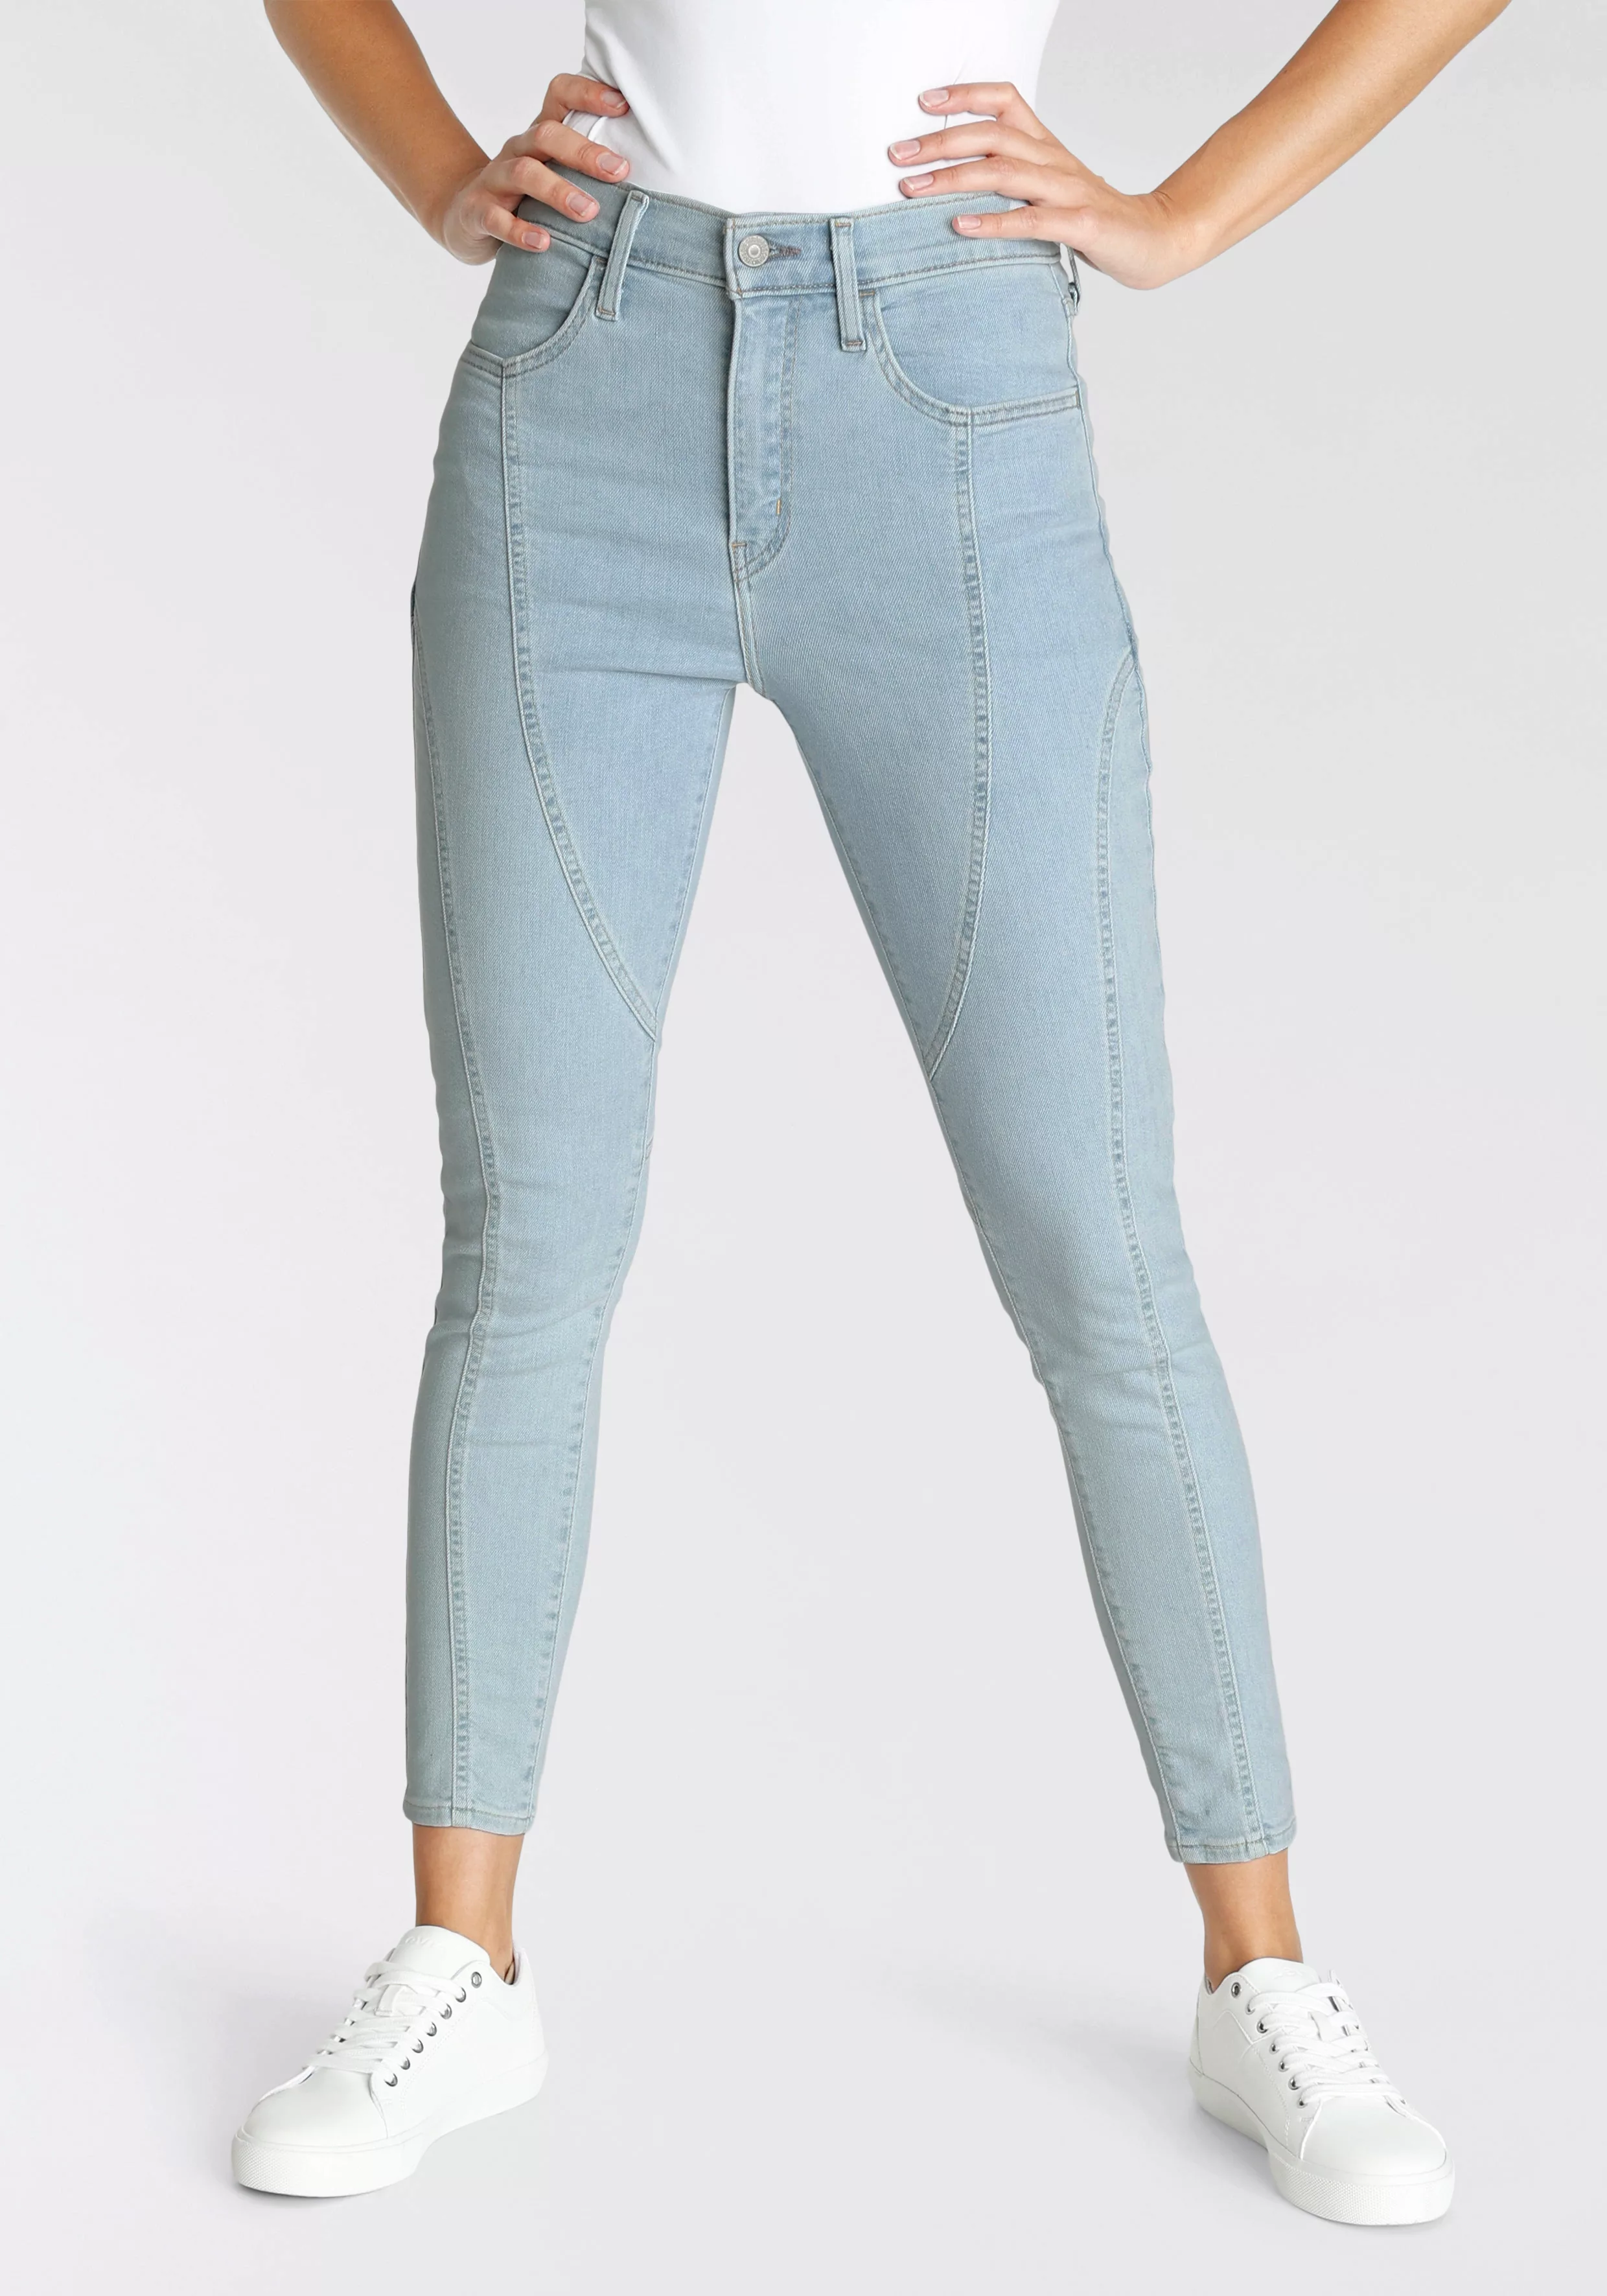 Levis Skinny-fit-Jeans "720 ZIP FRONT", Biker- Look günstig online kaufen